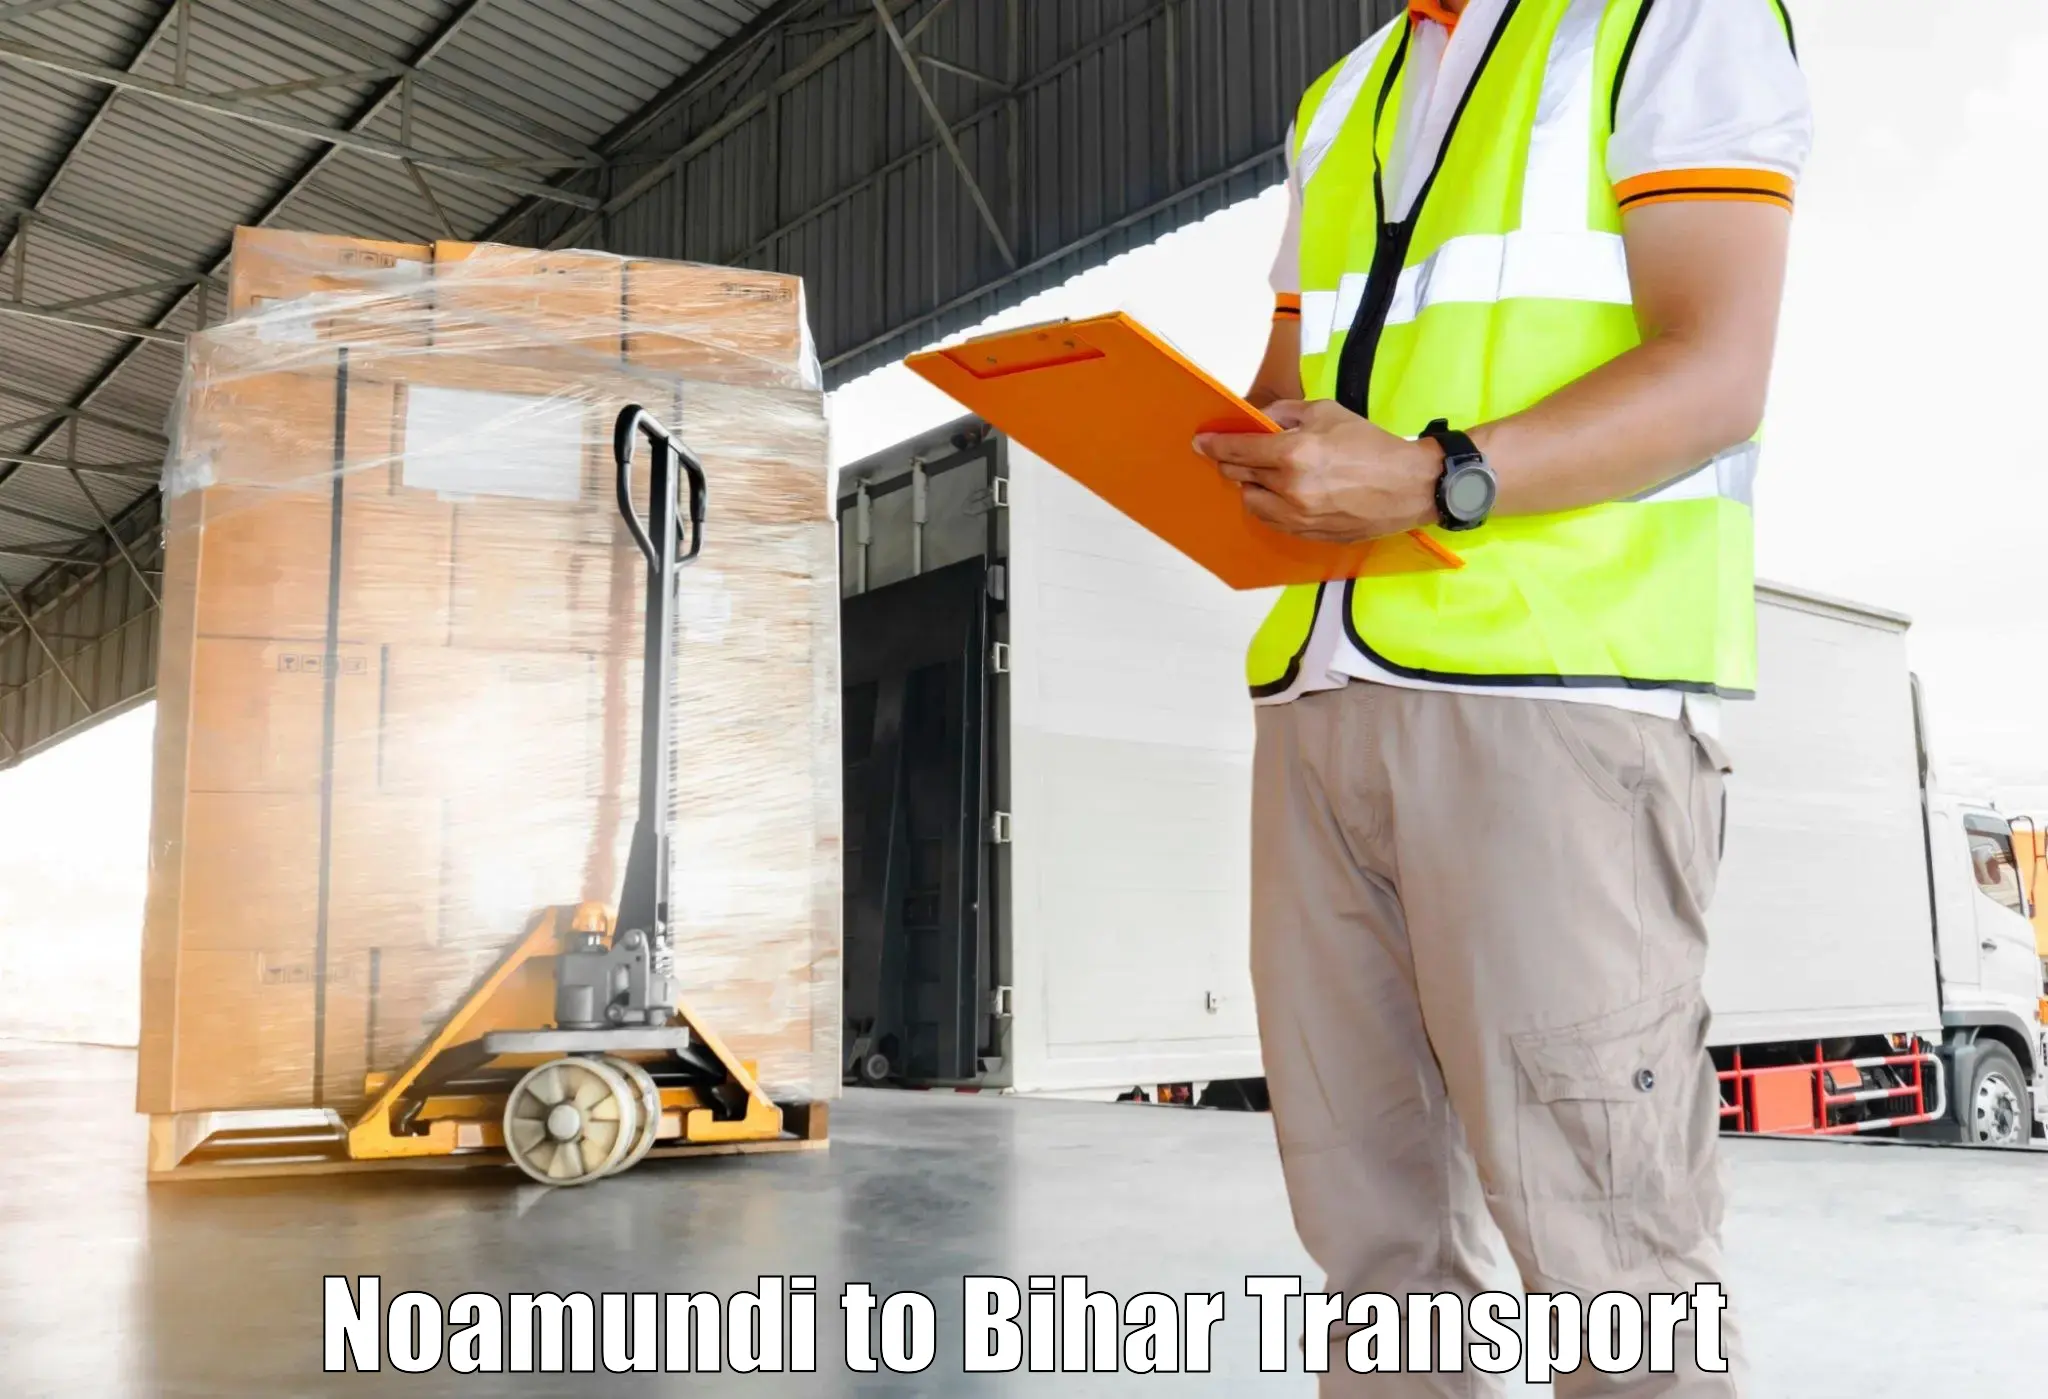 Transport services in Noamundi to Barhiya